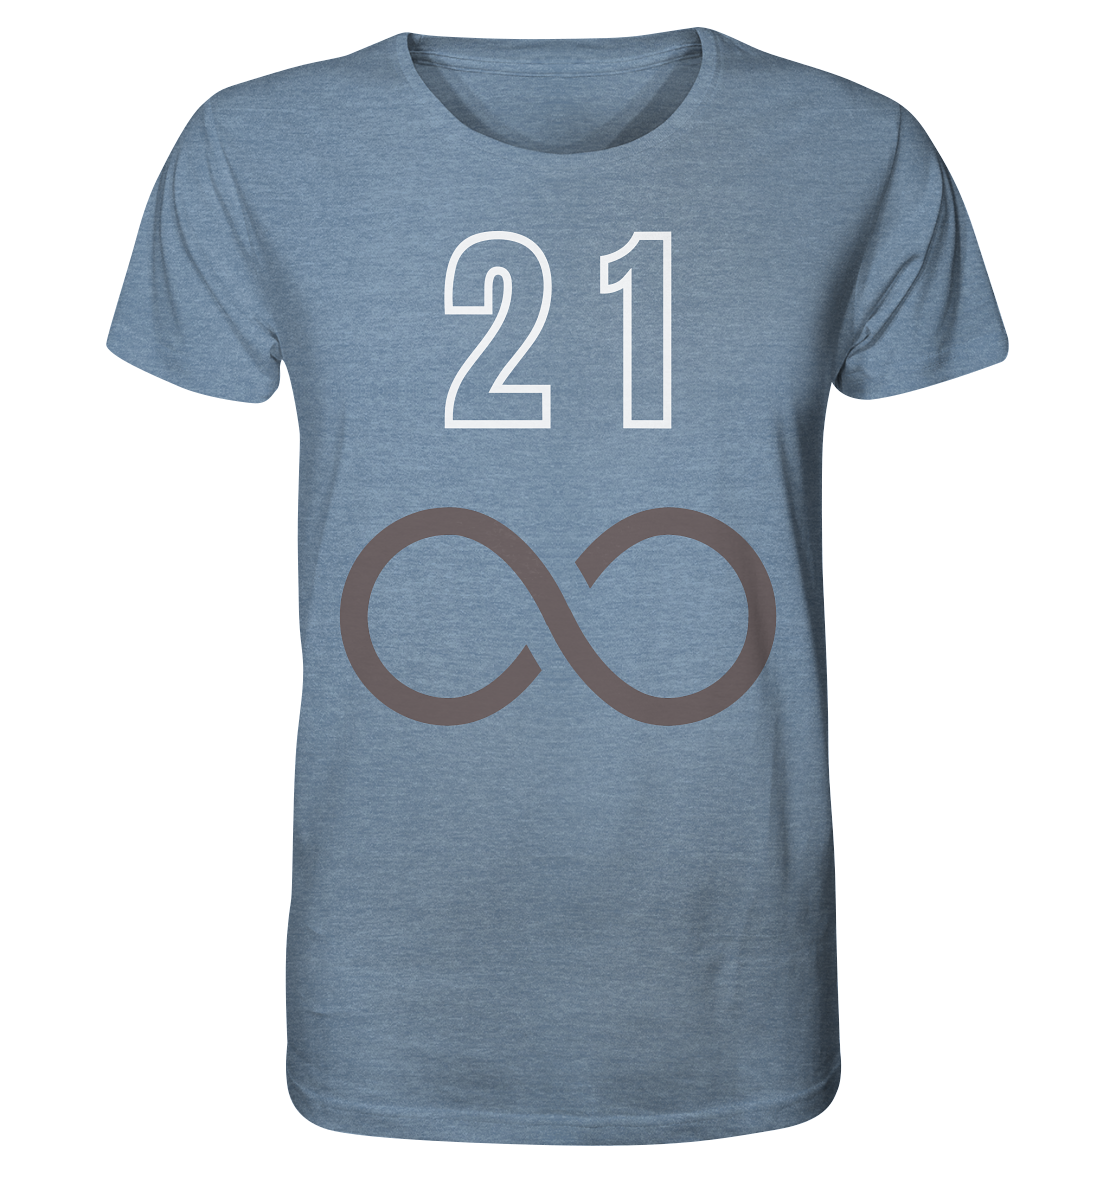 21 unendlich - Organic Shirt (meliert)